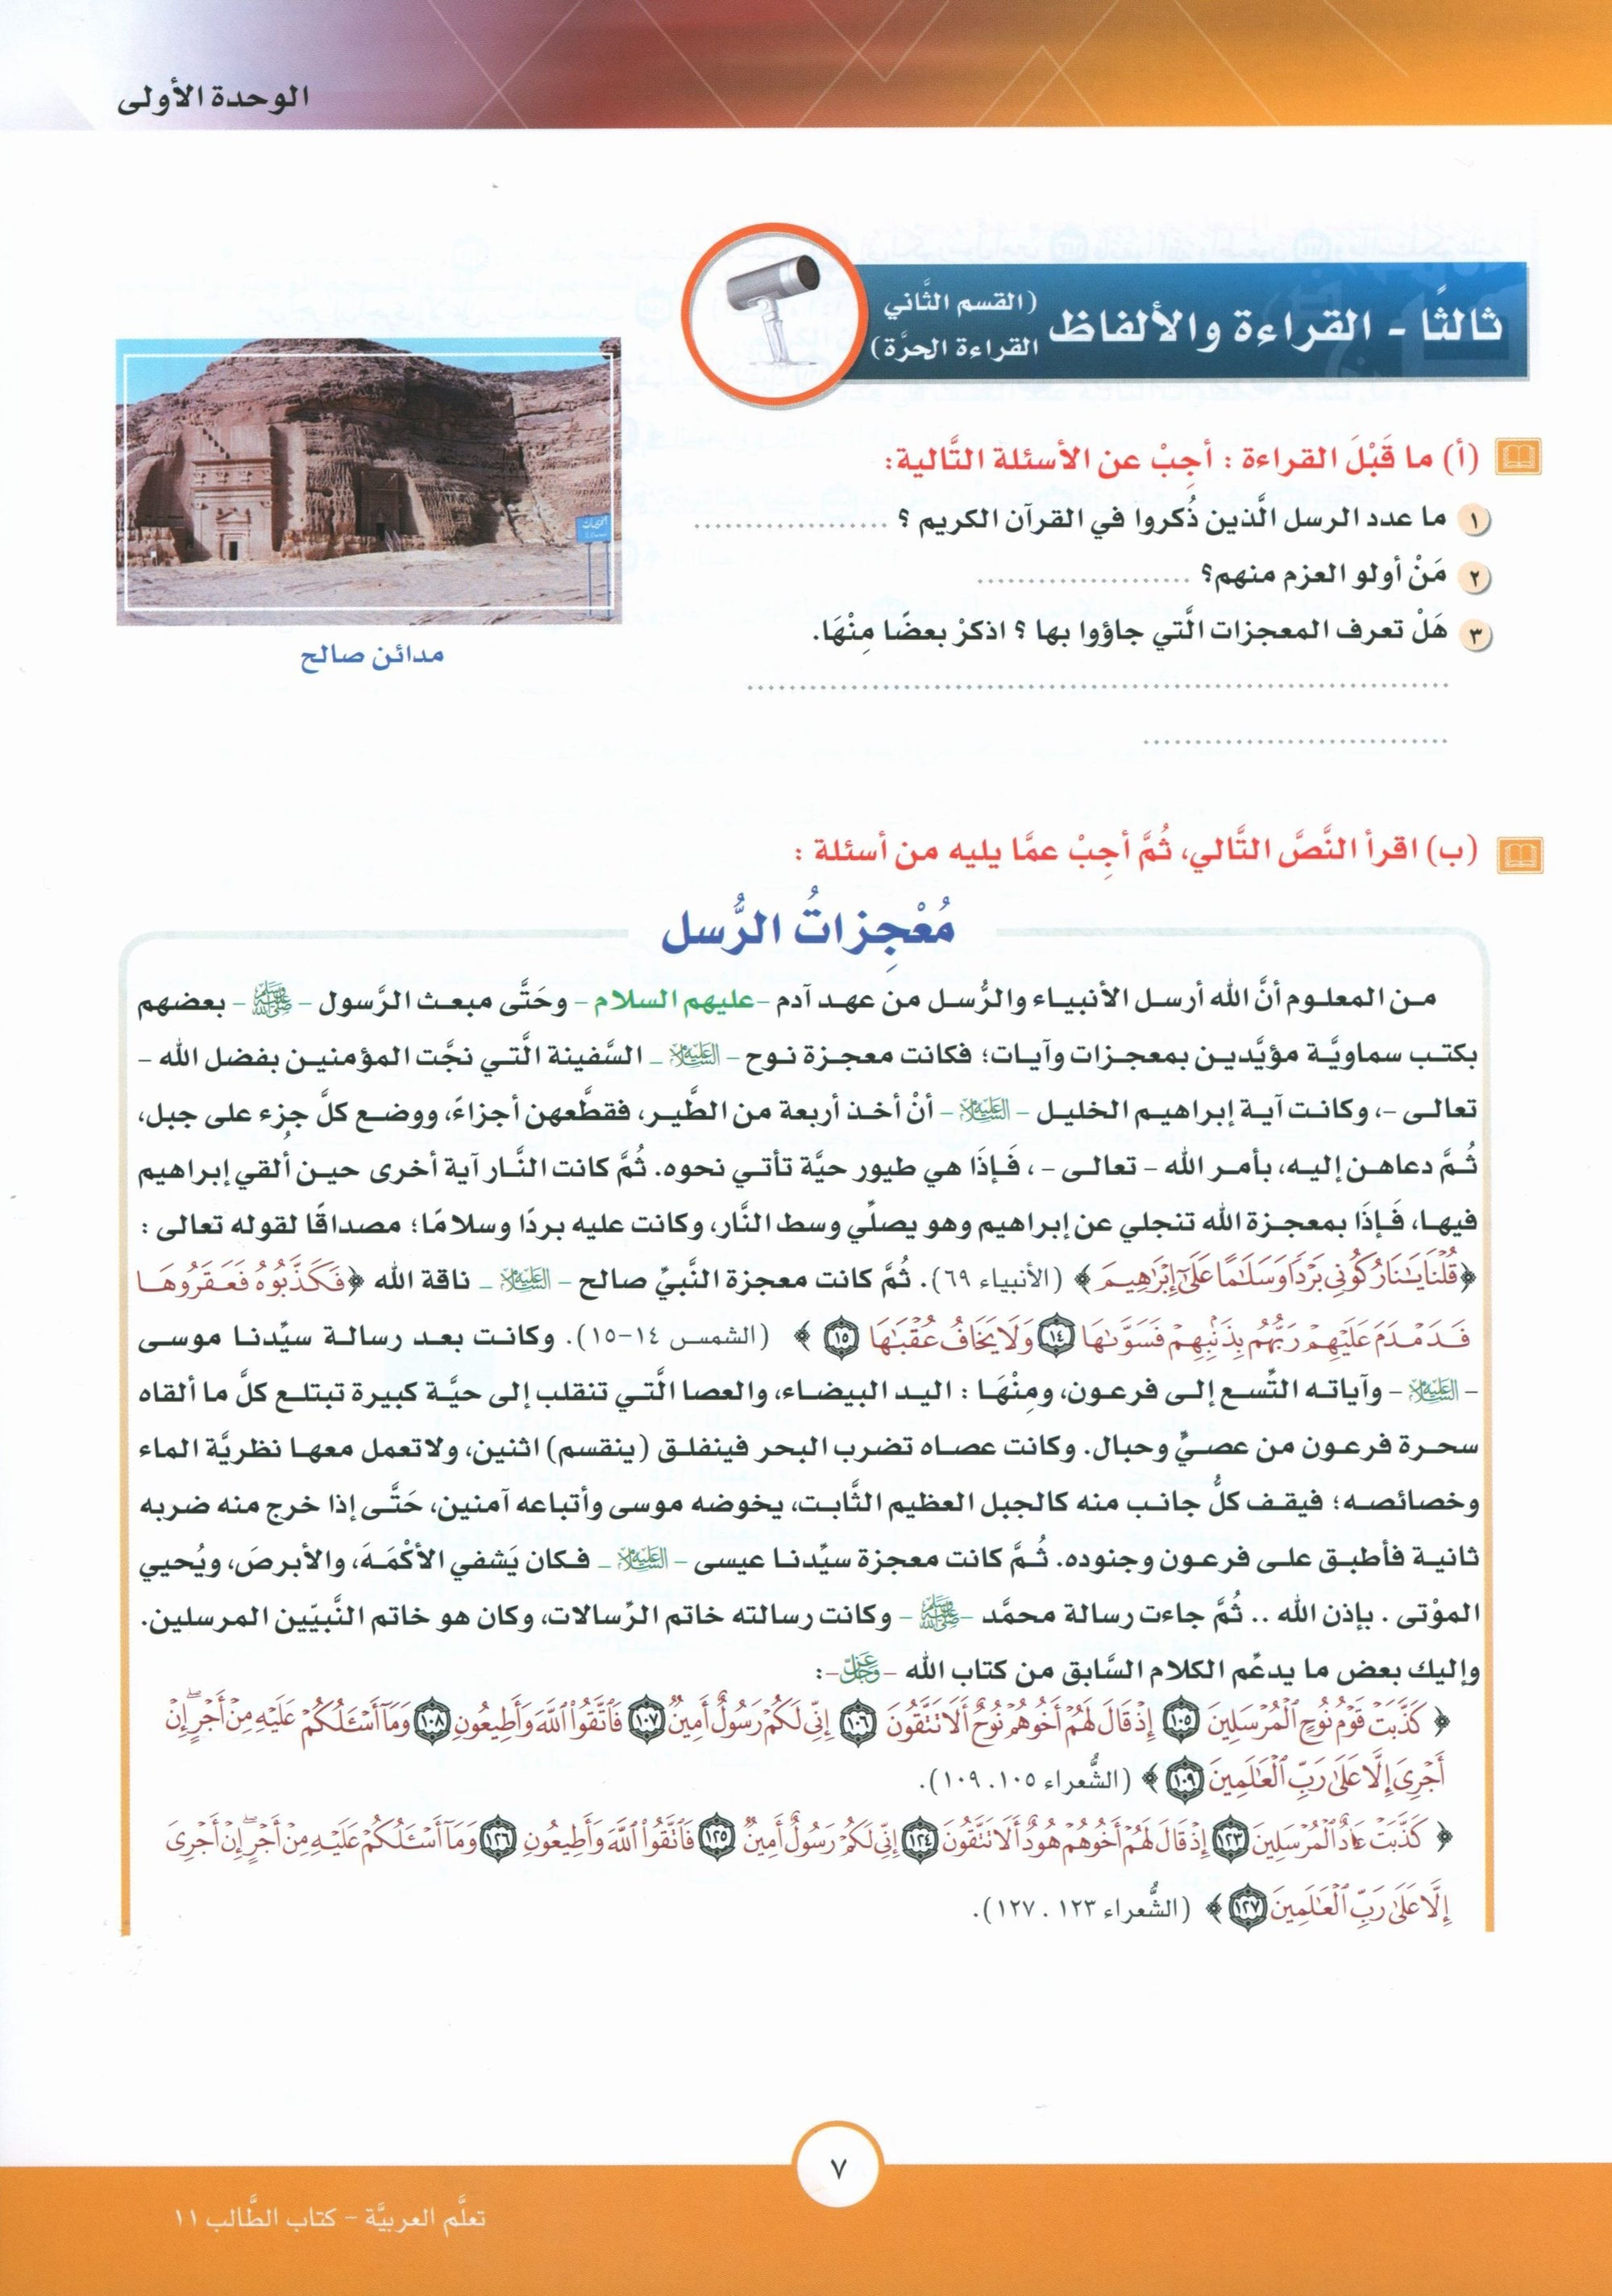 ICO Learn Arabic Textbook Level 11 Part 1 تعلم العربية كتاب التلميذ